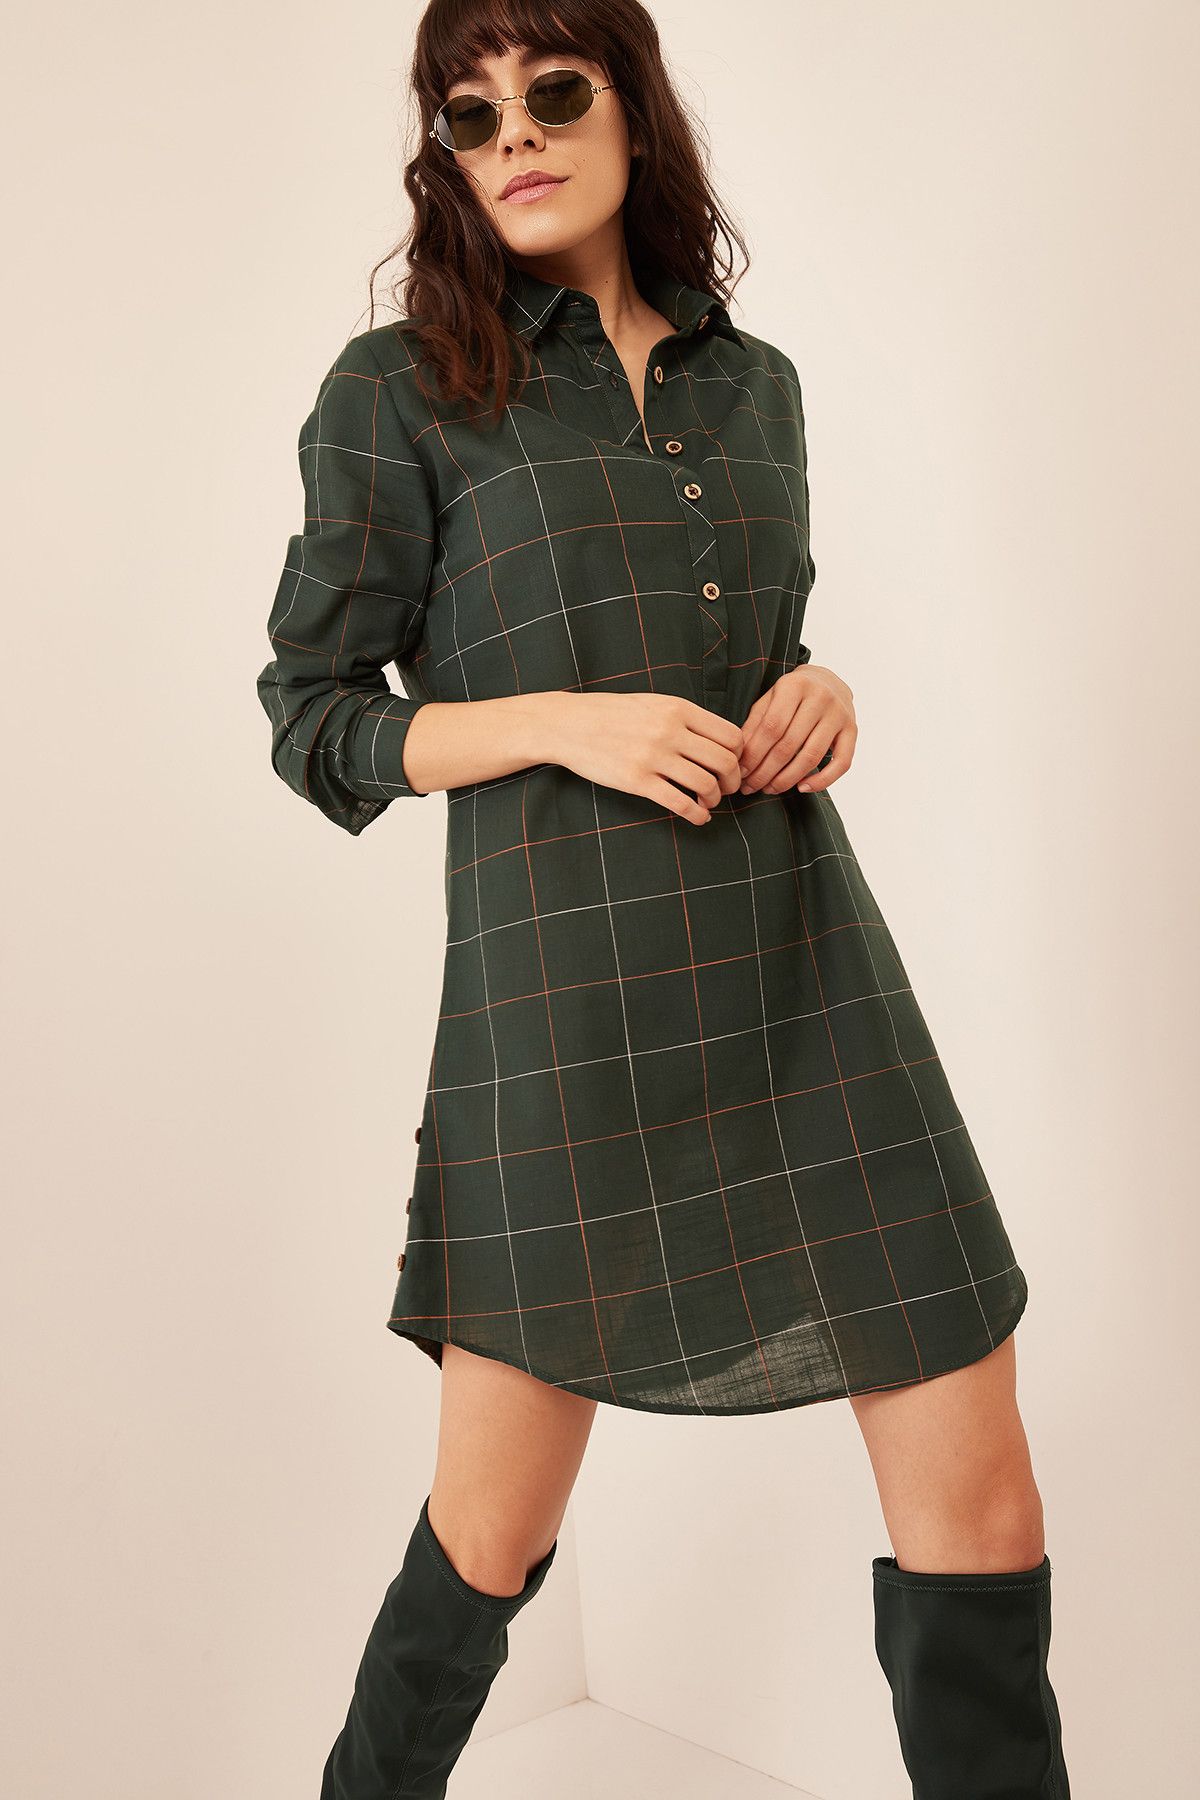 Olalook Kadın Yeşil Gömlek Yakalı Düğme Detaylı İnce Ekose Elbise ELB-19000140